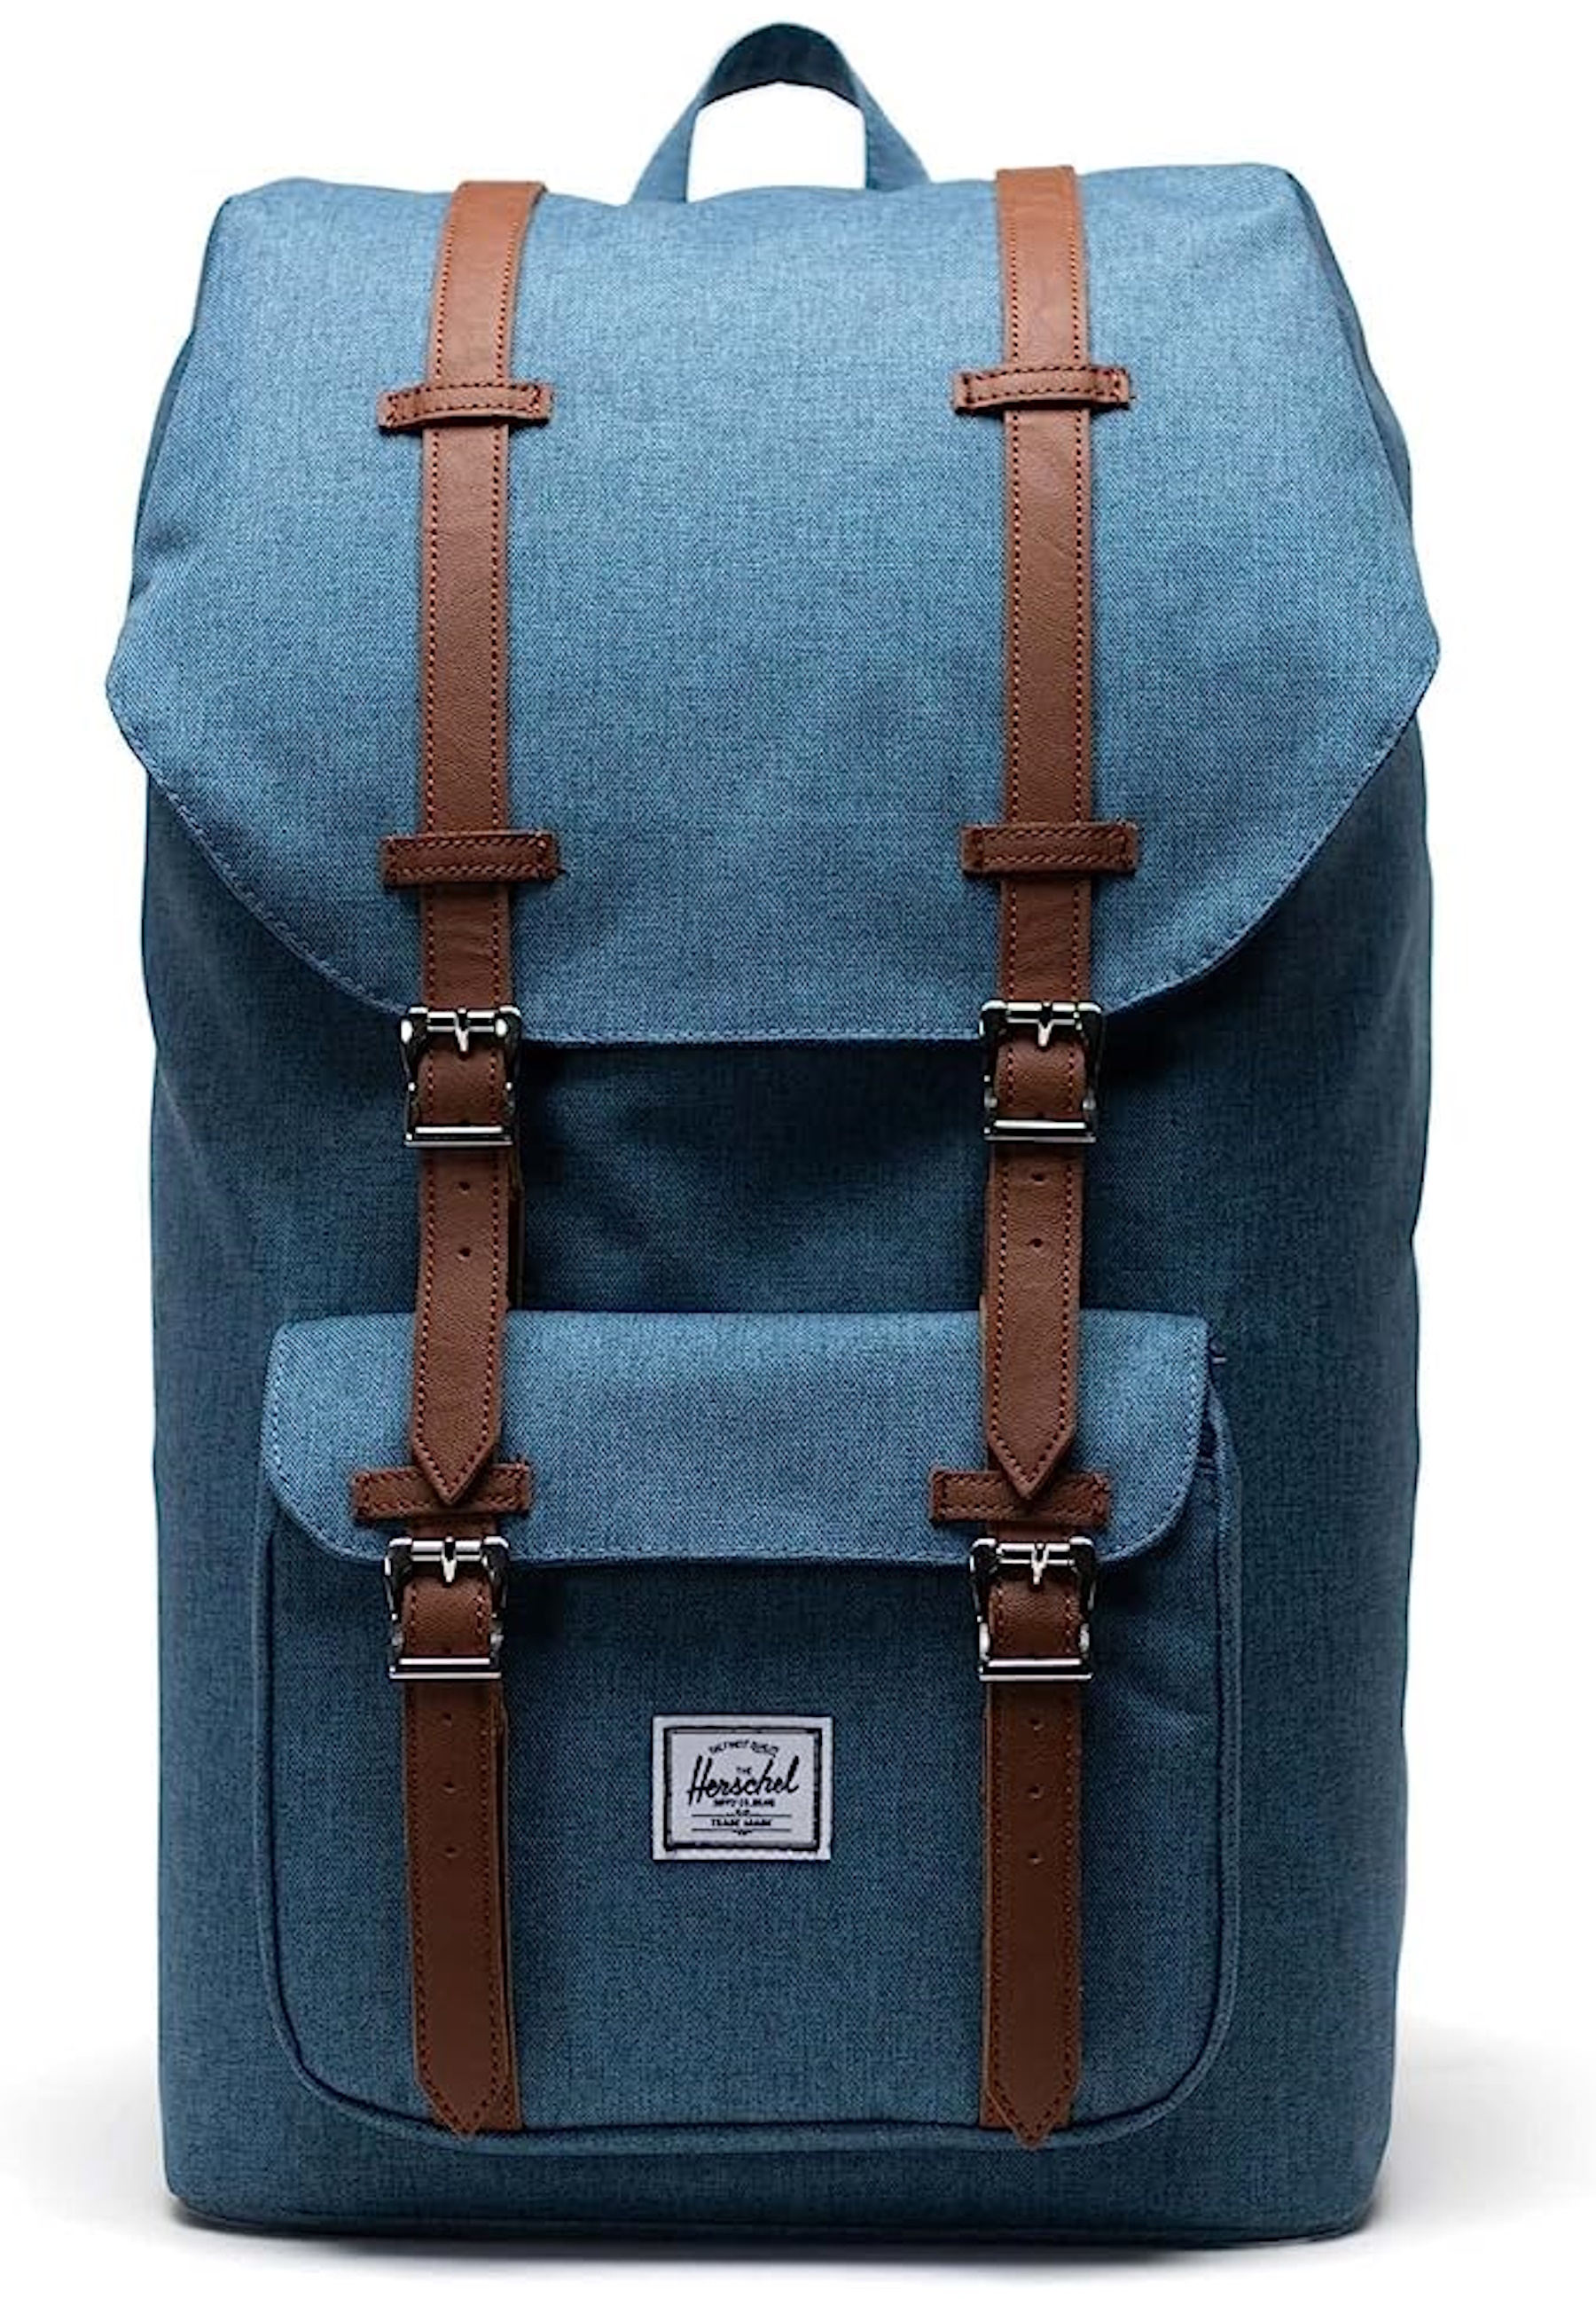 Рюкзак Herschel 'Little America', синий поставка рюкзаков среднего размера little america рюкзак цвета морской волны herschel